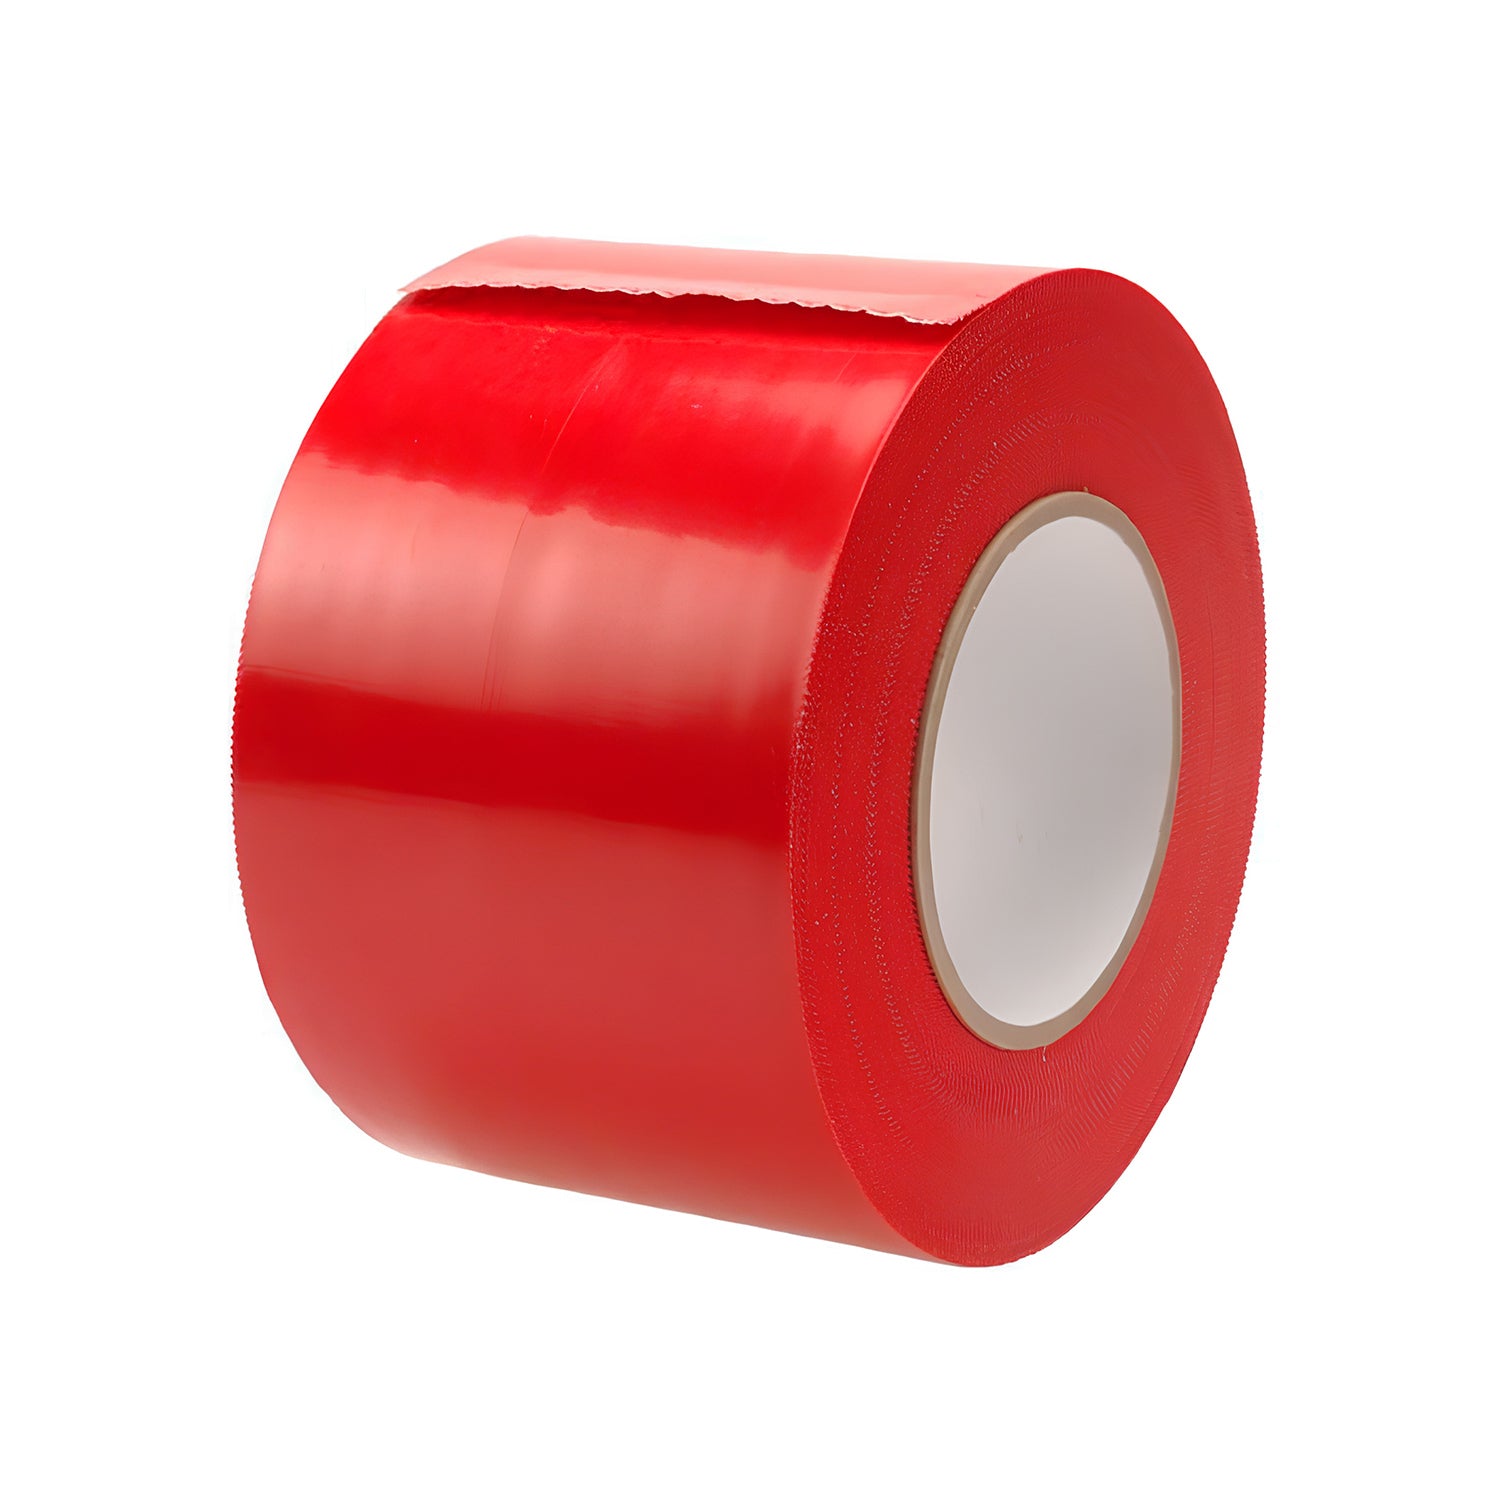 Red vapor barrier tape